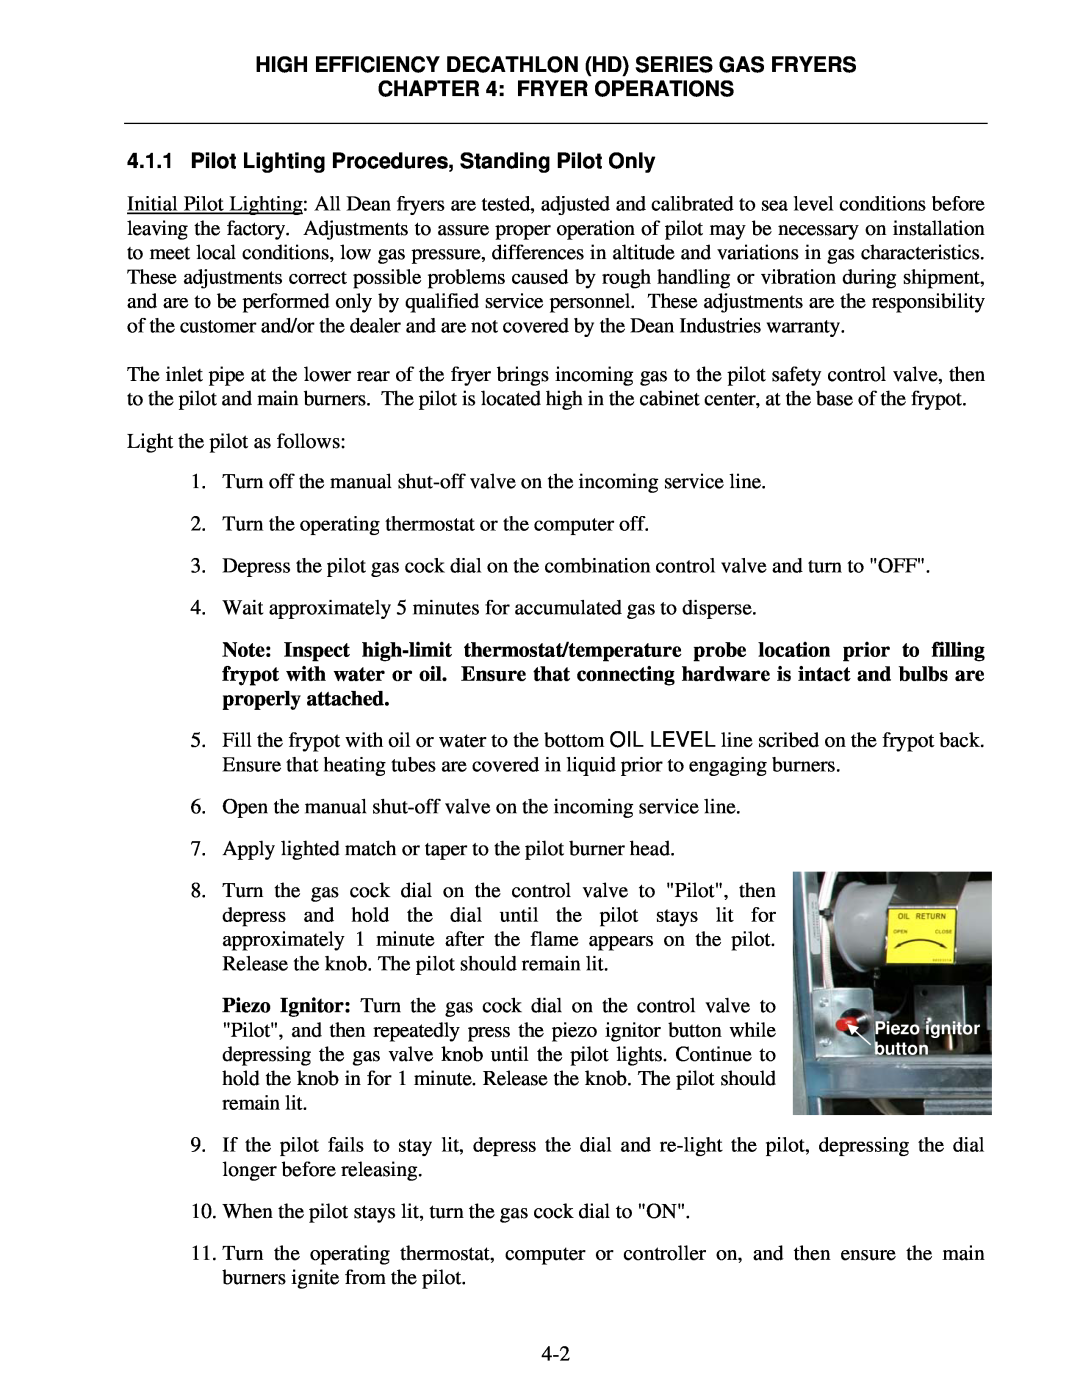 Frymaster FPHD65 operation manual Fryer Operations, High Efficiency Decathlon Hd Series Gas Fryers 